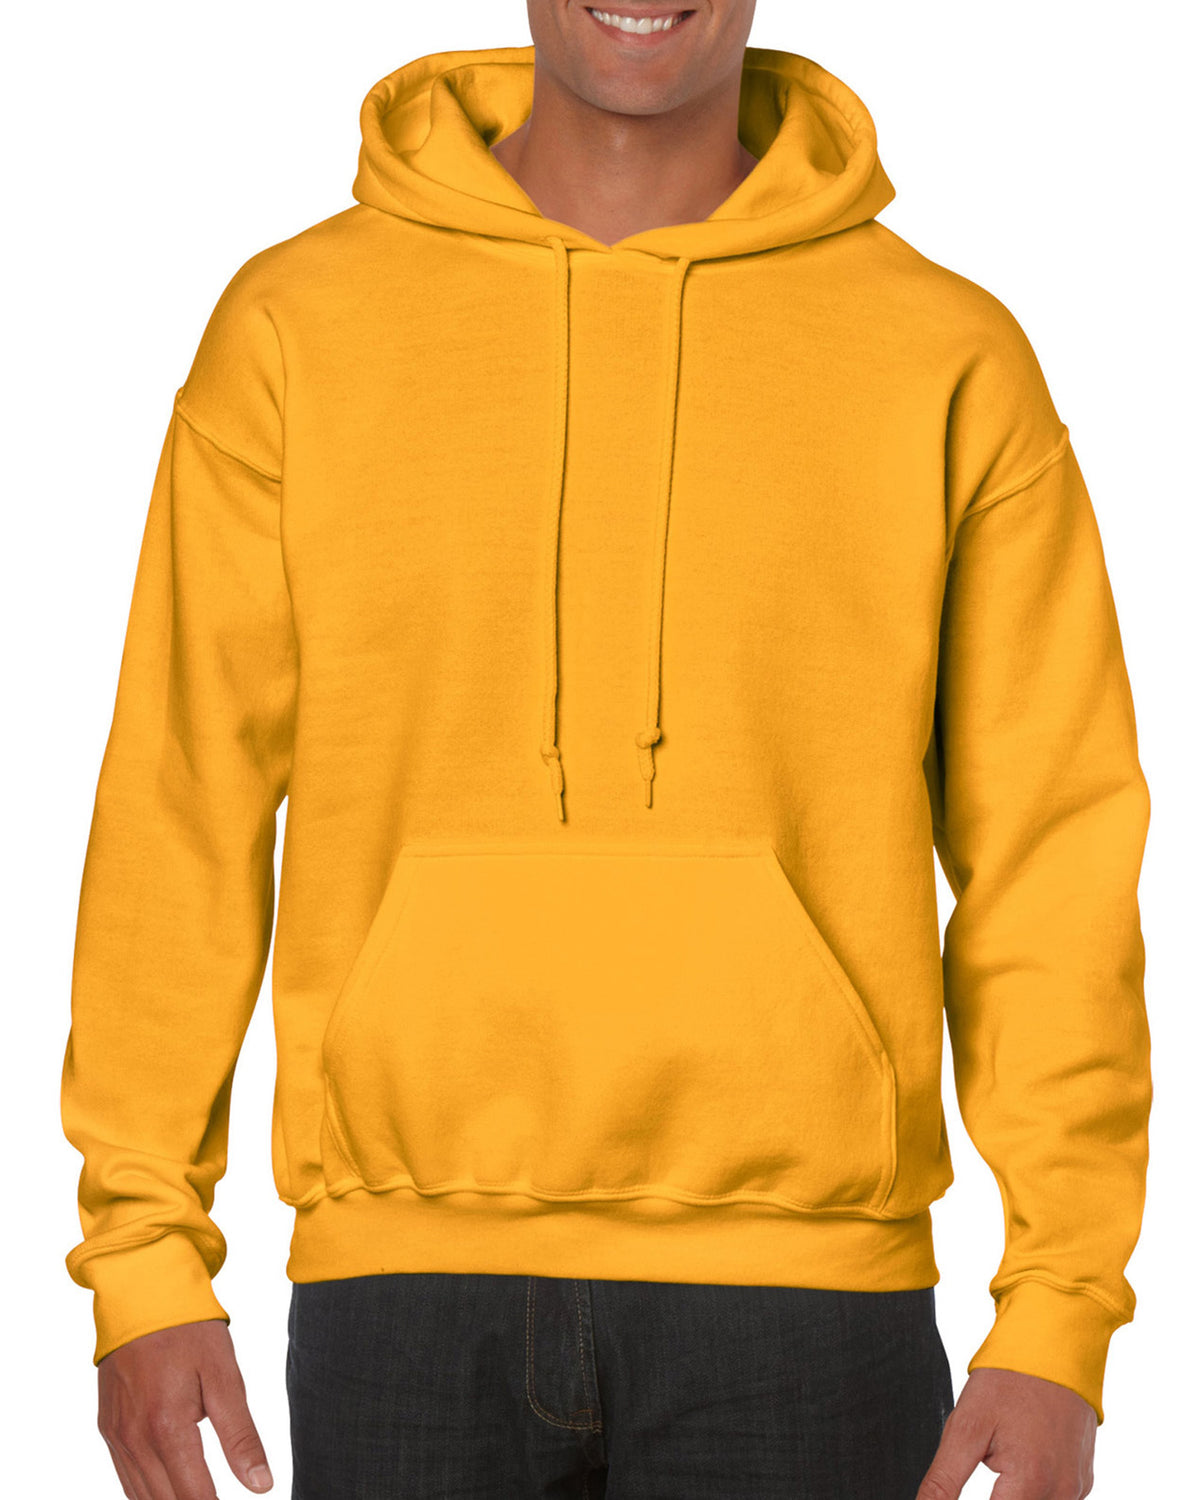 Wholesale Hot sale High Quality Blank Sweatshirt Orange Fleece